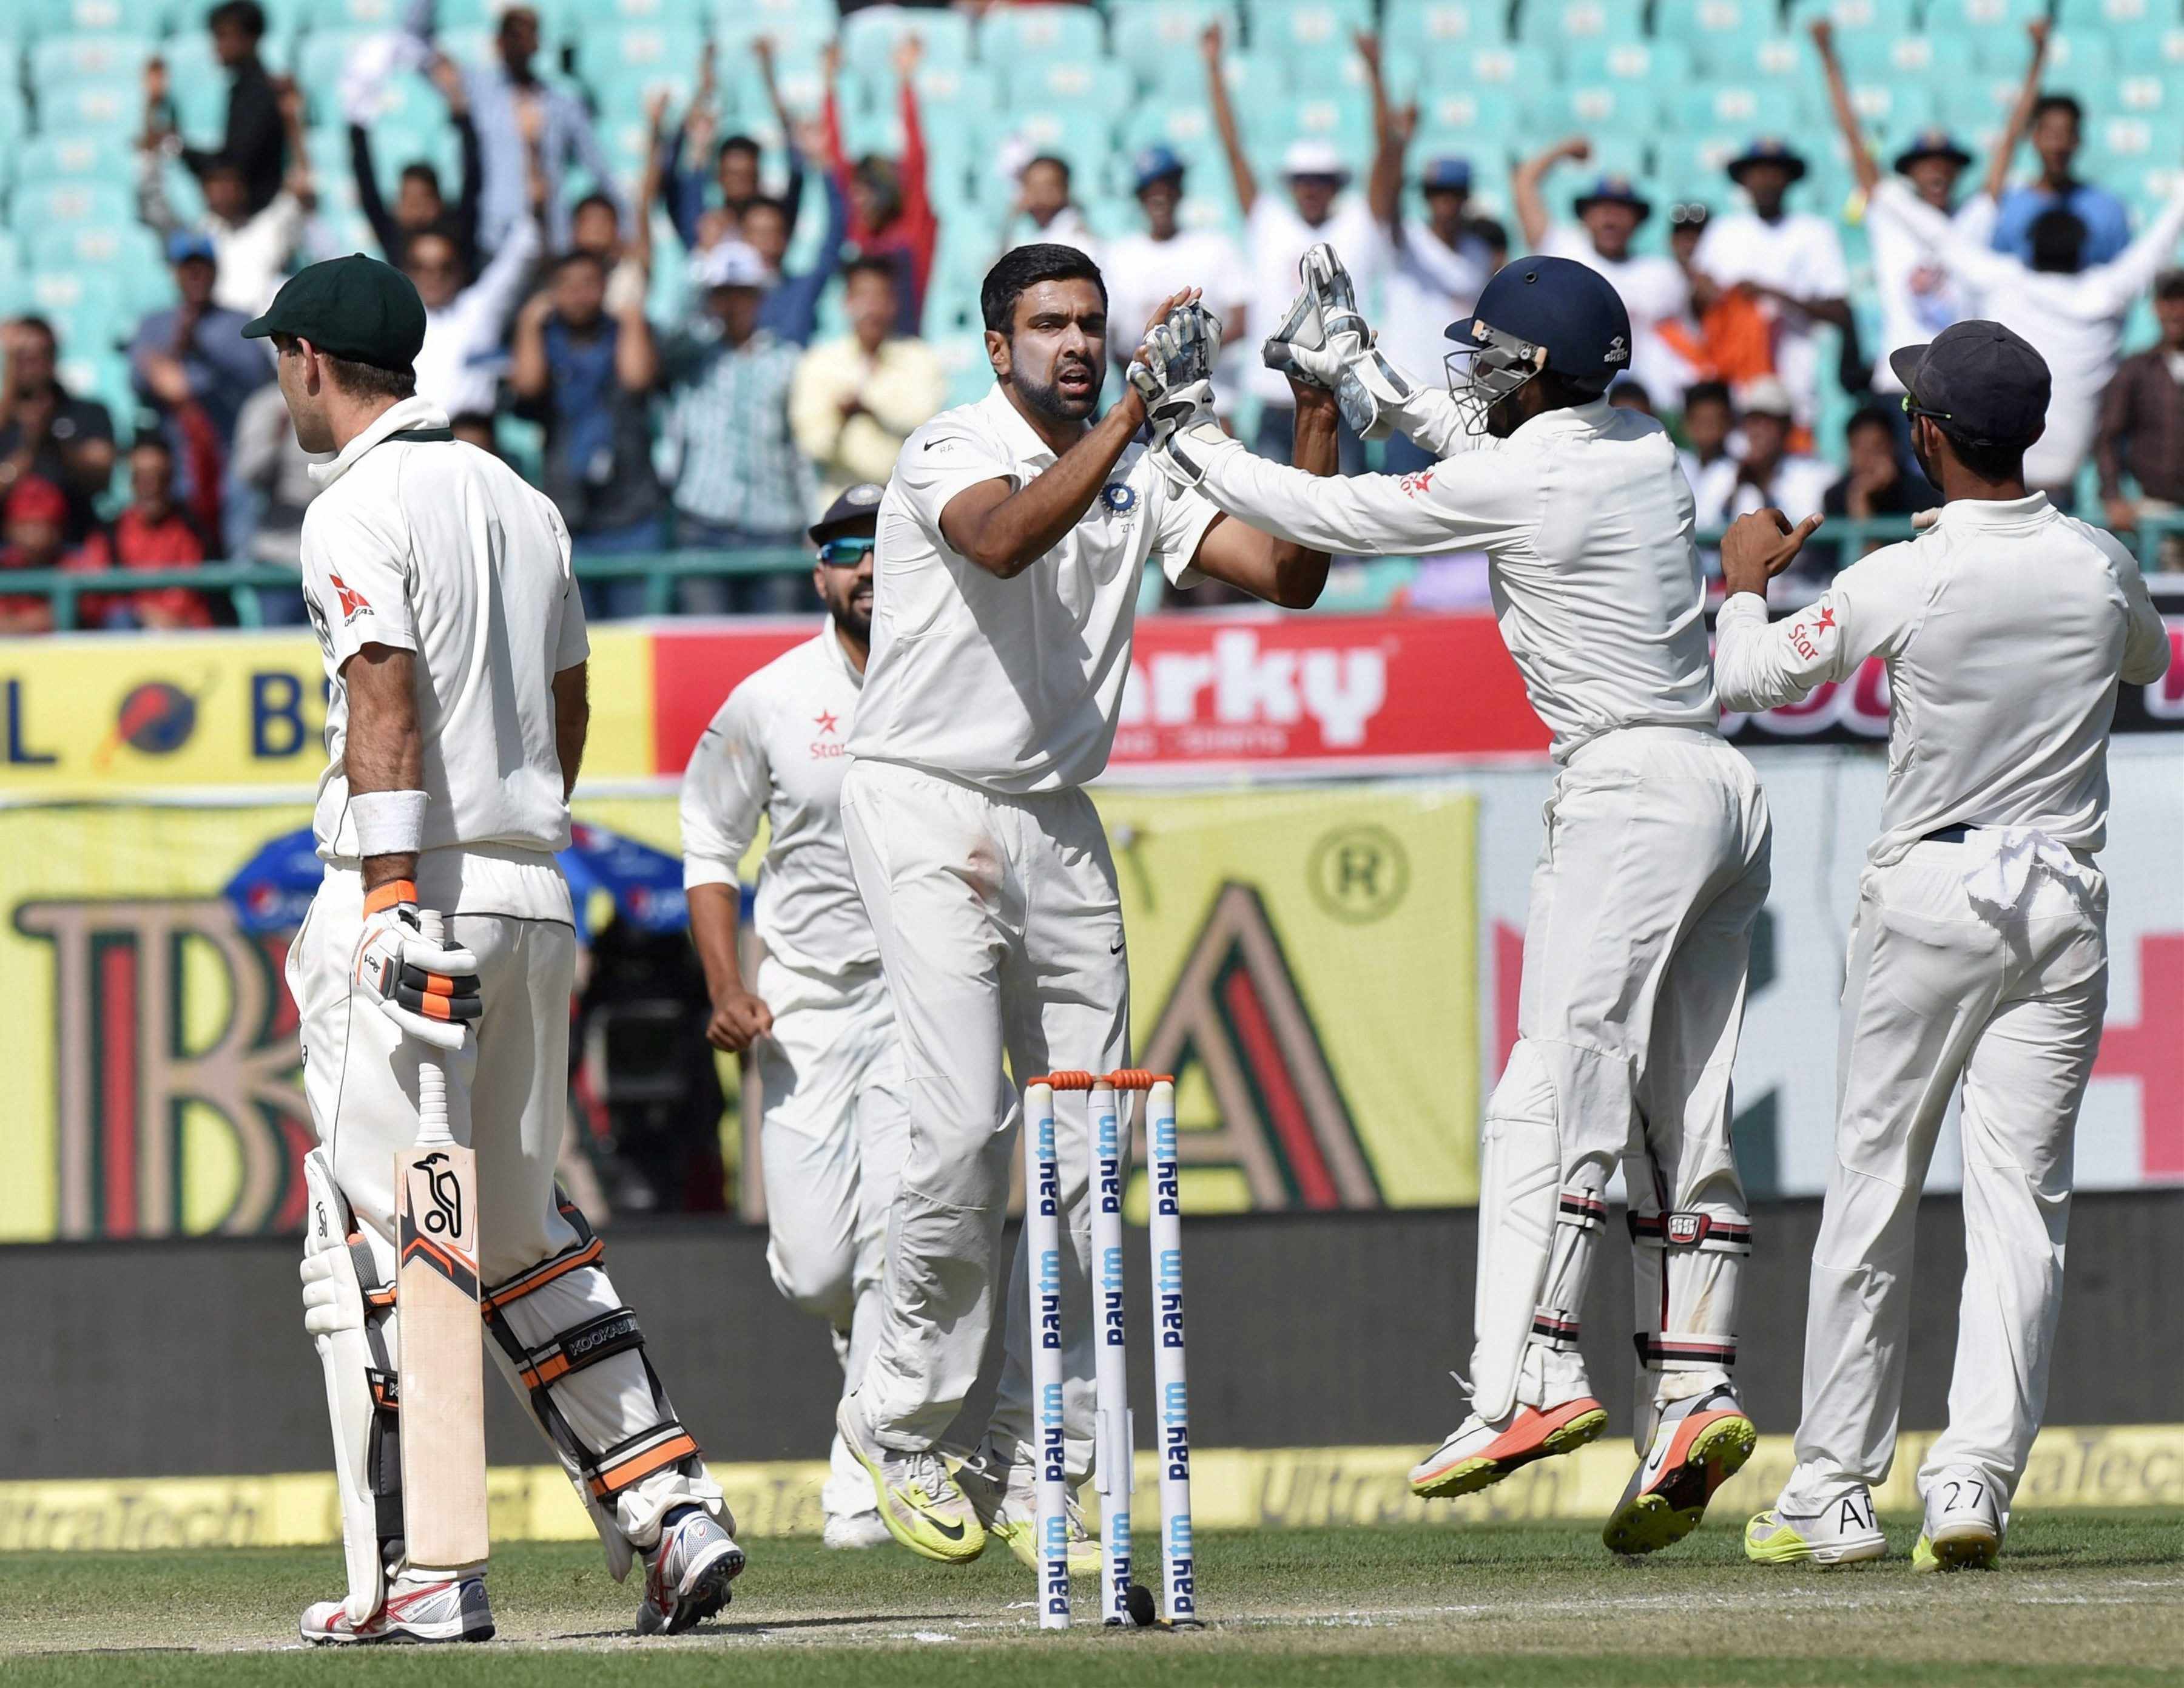 धर्मशाला टेस्ट 8 विकेट से भारत जीता, टीम इंडिया ने विराट की कप्तानी में यह लगातार सातवीं सीरीज जीती